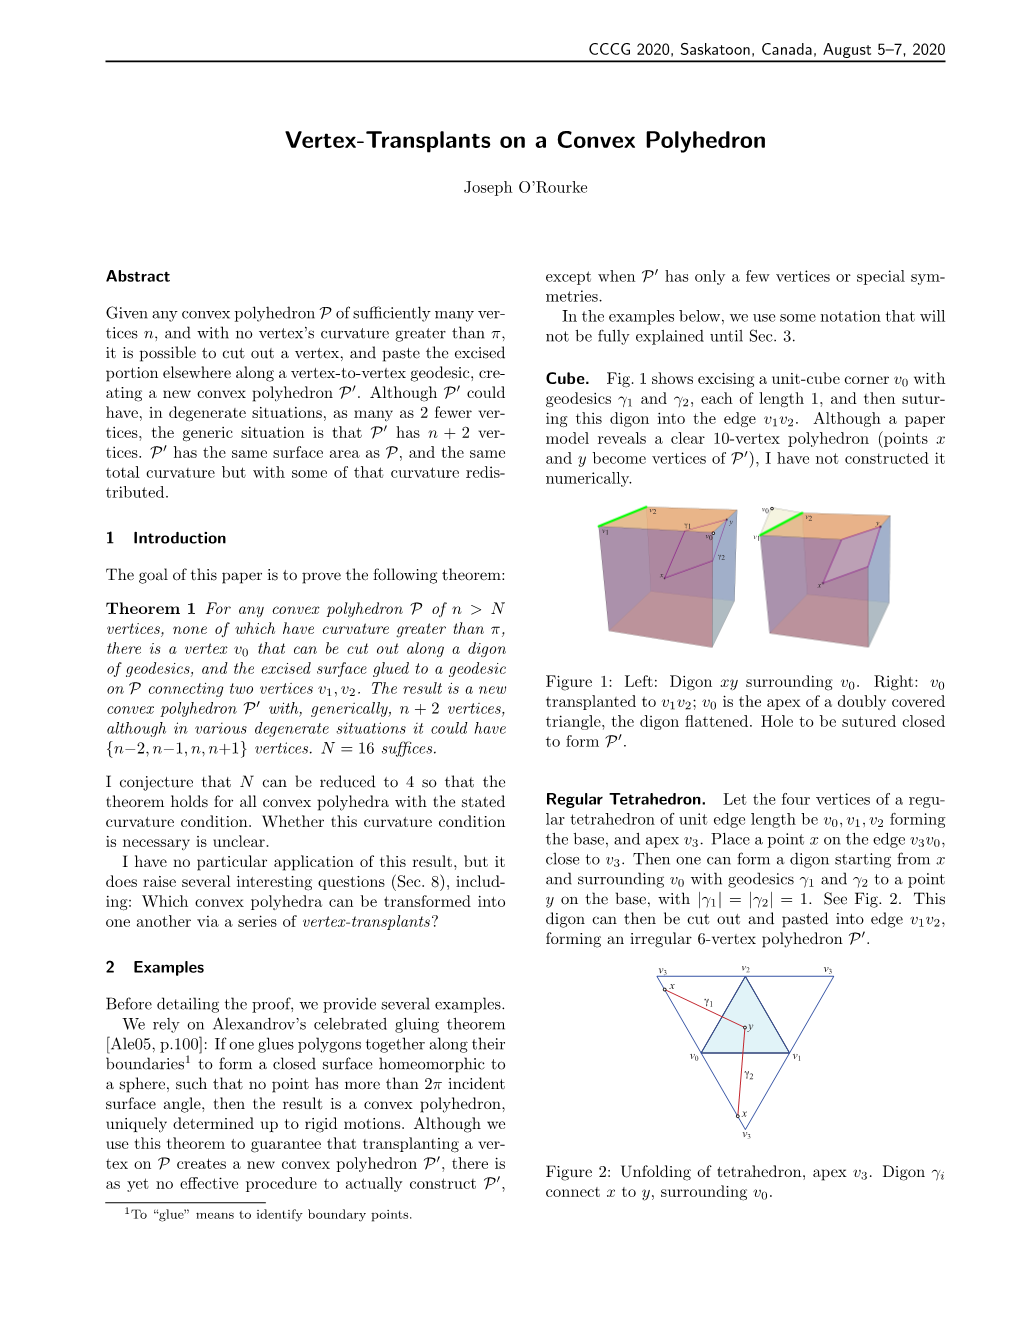 Vertex-Transplants on a Convex Polyhedron